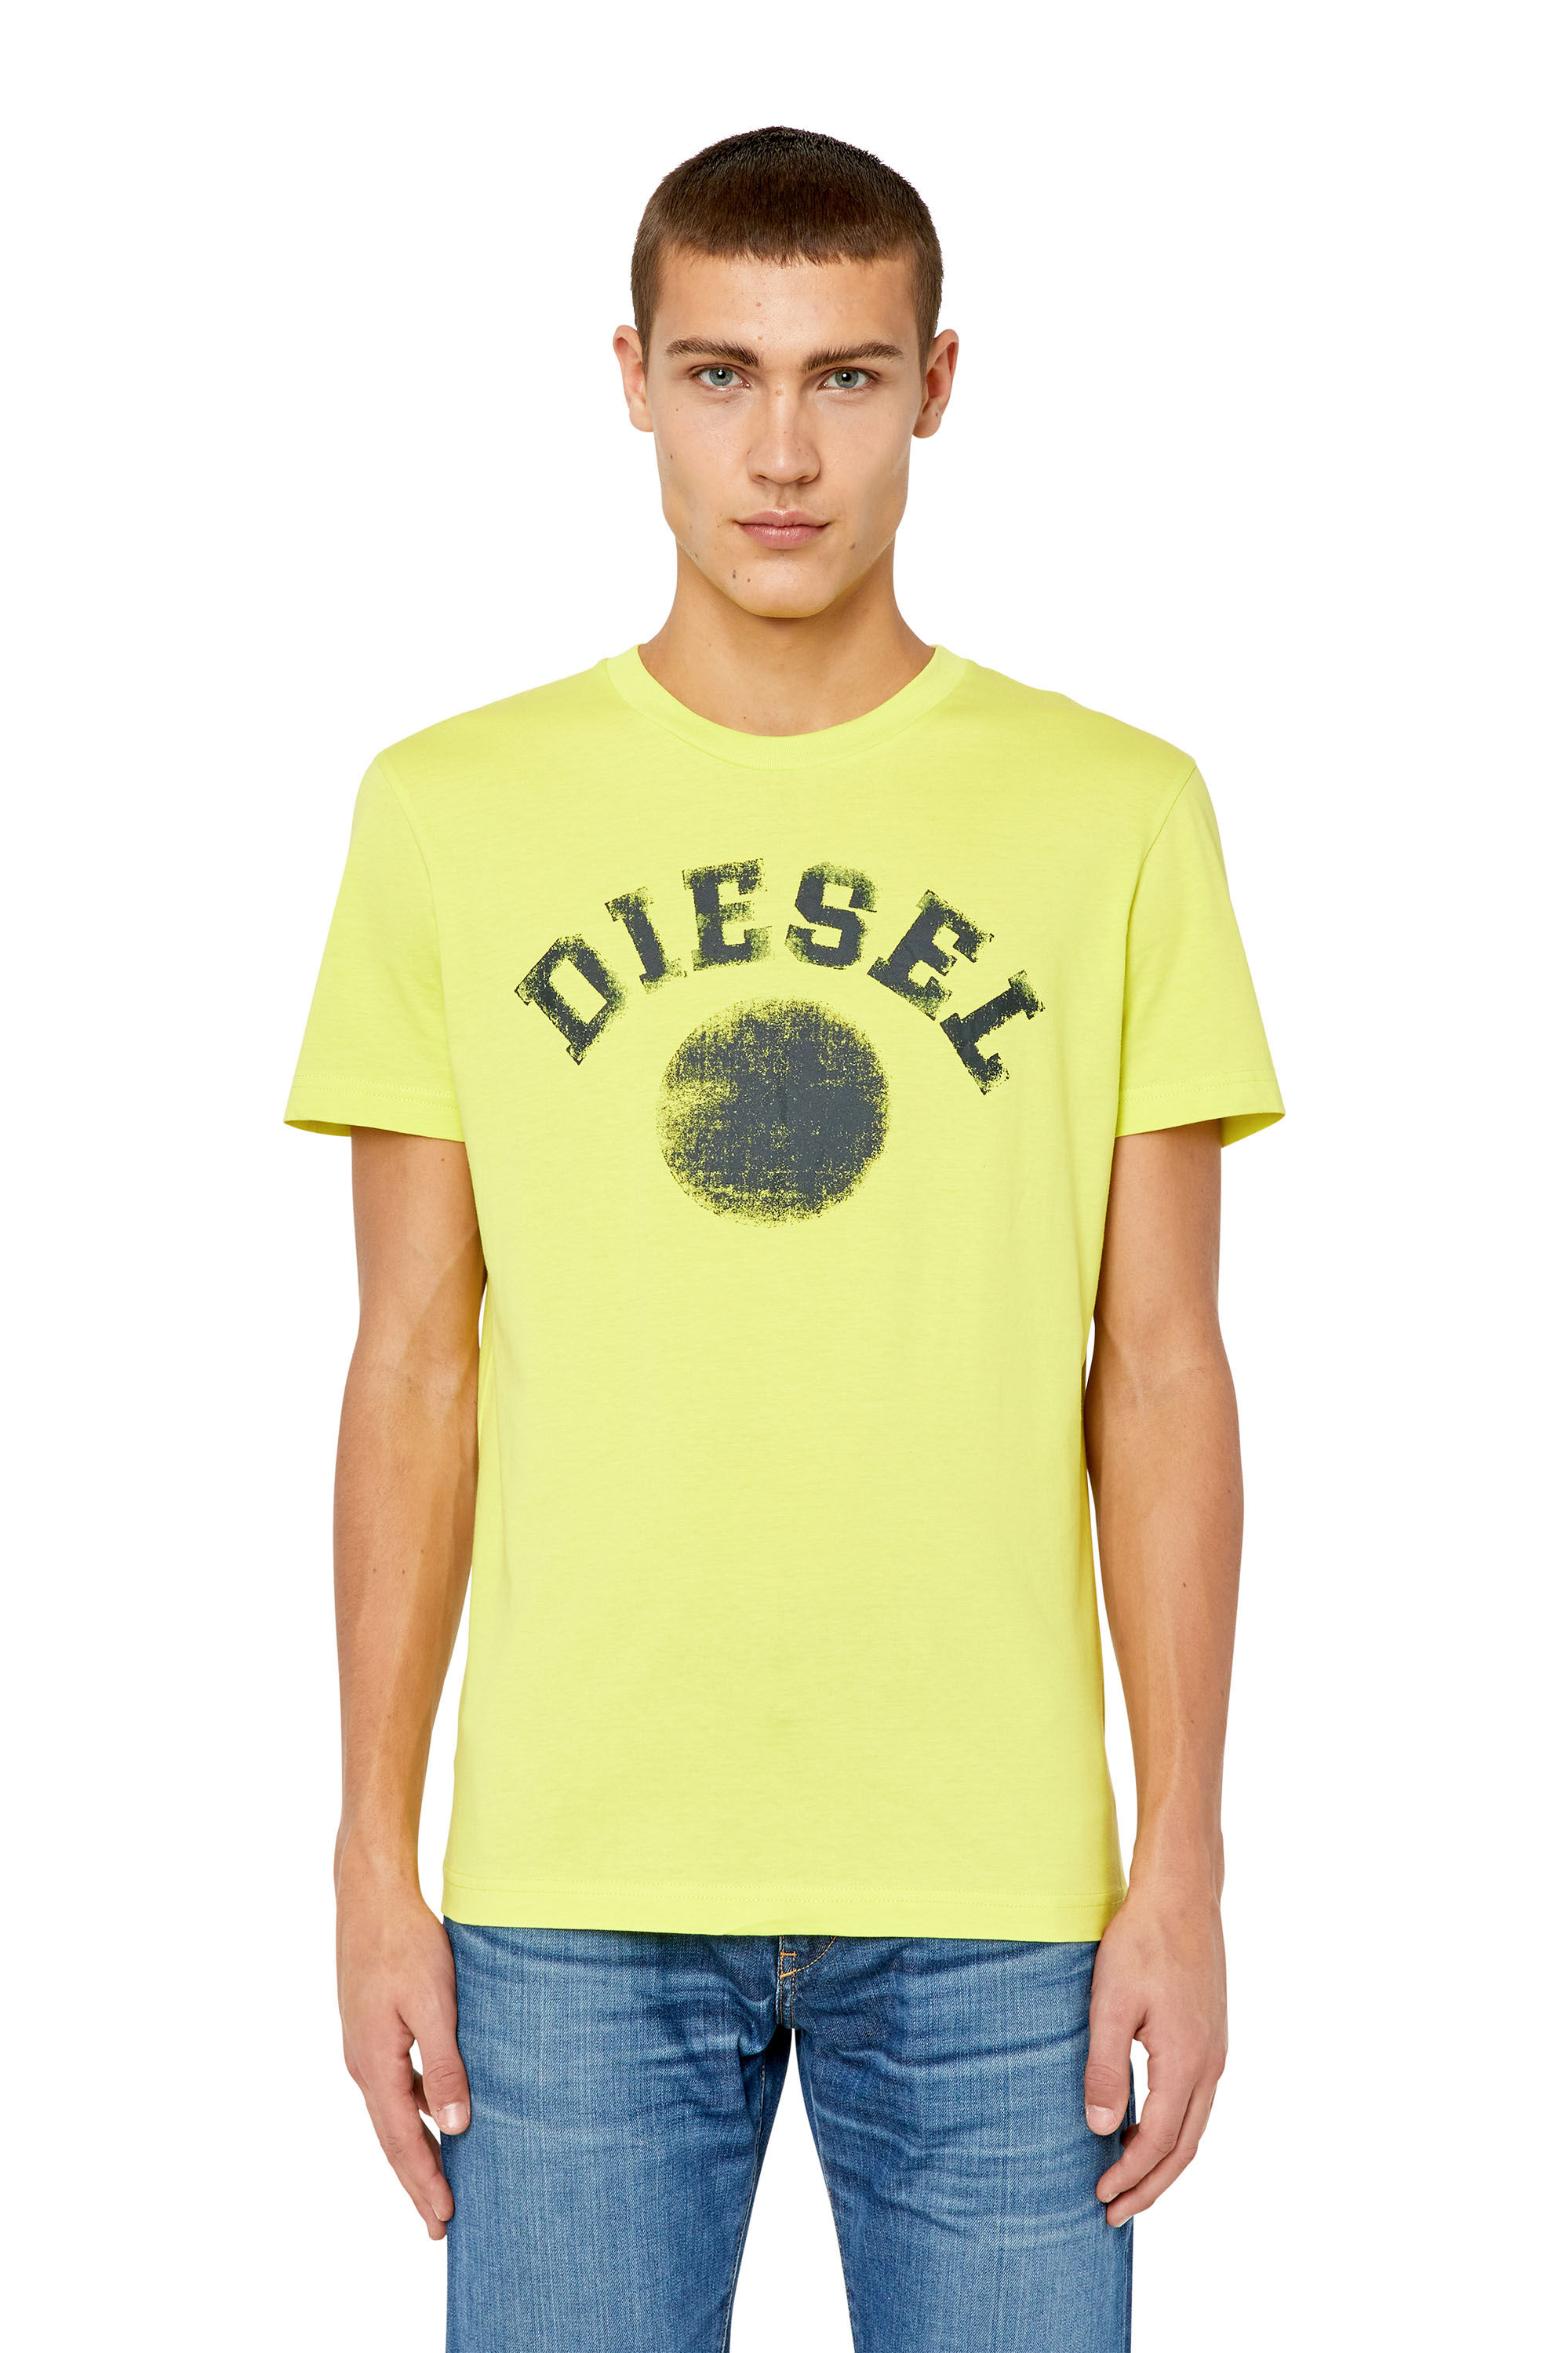 Diesel - T-DIEGOR-K56, Yellow Fluo - Image 3